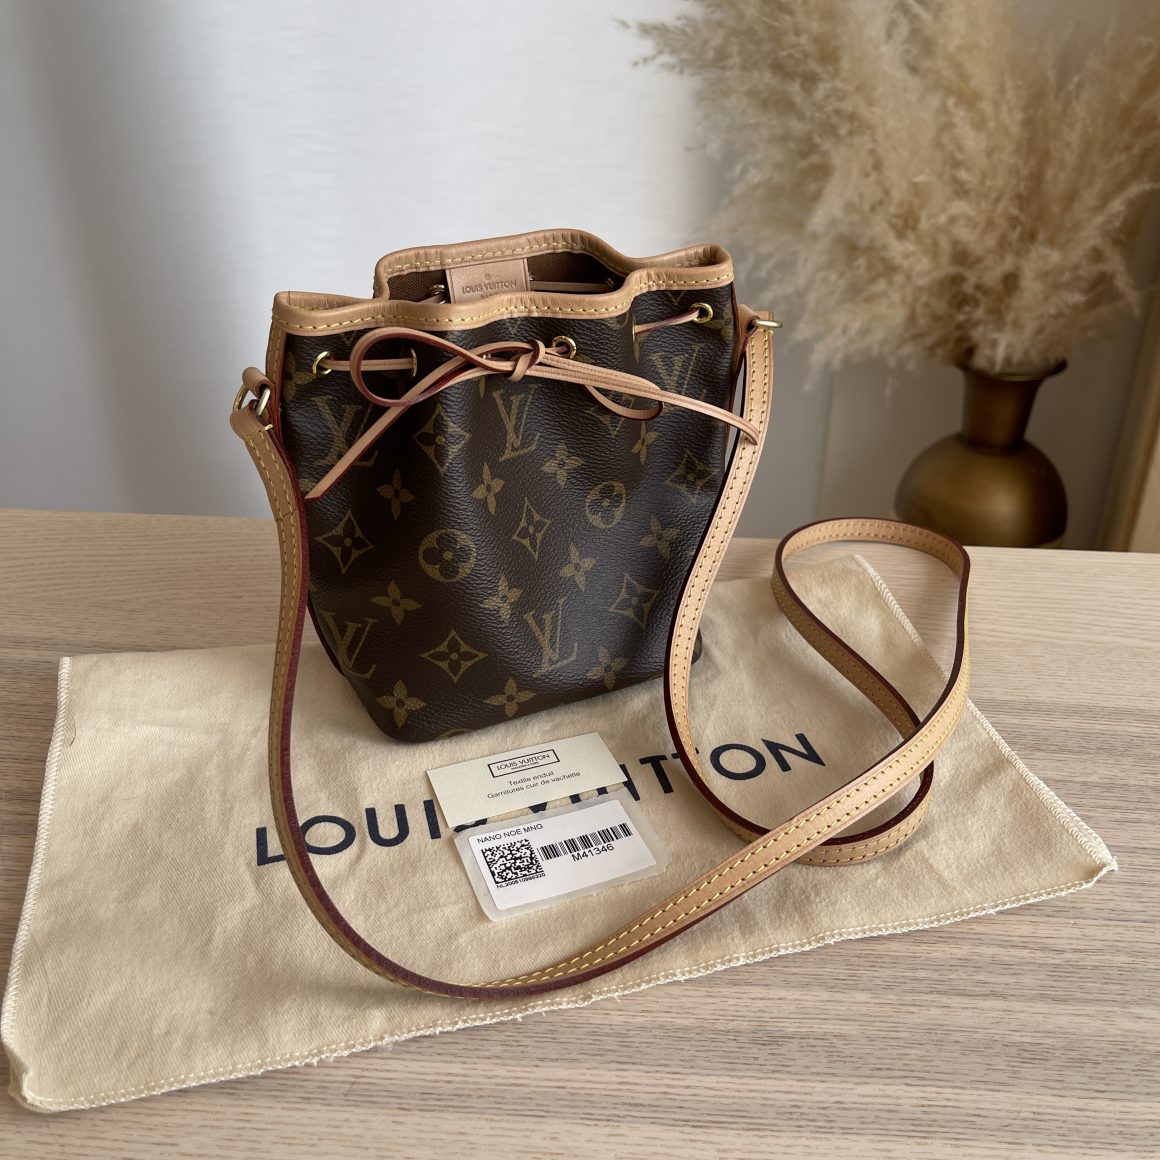 Louis Vuitton LV × YK Nano Noe